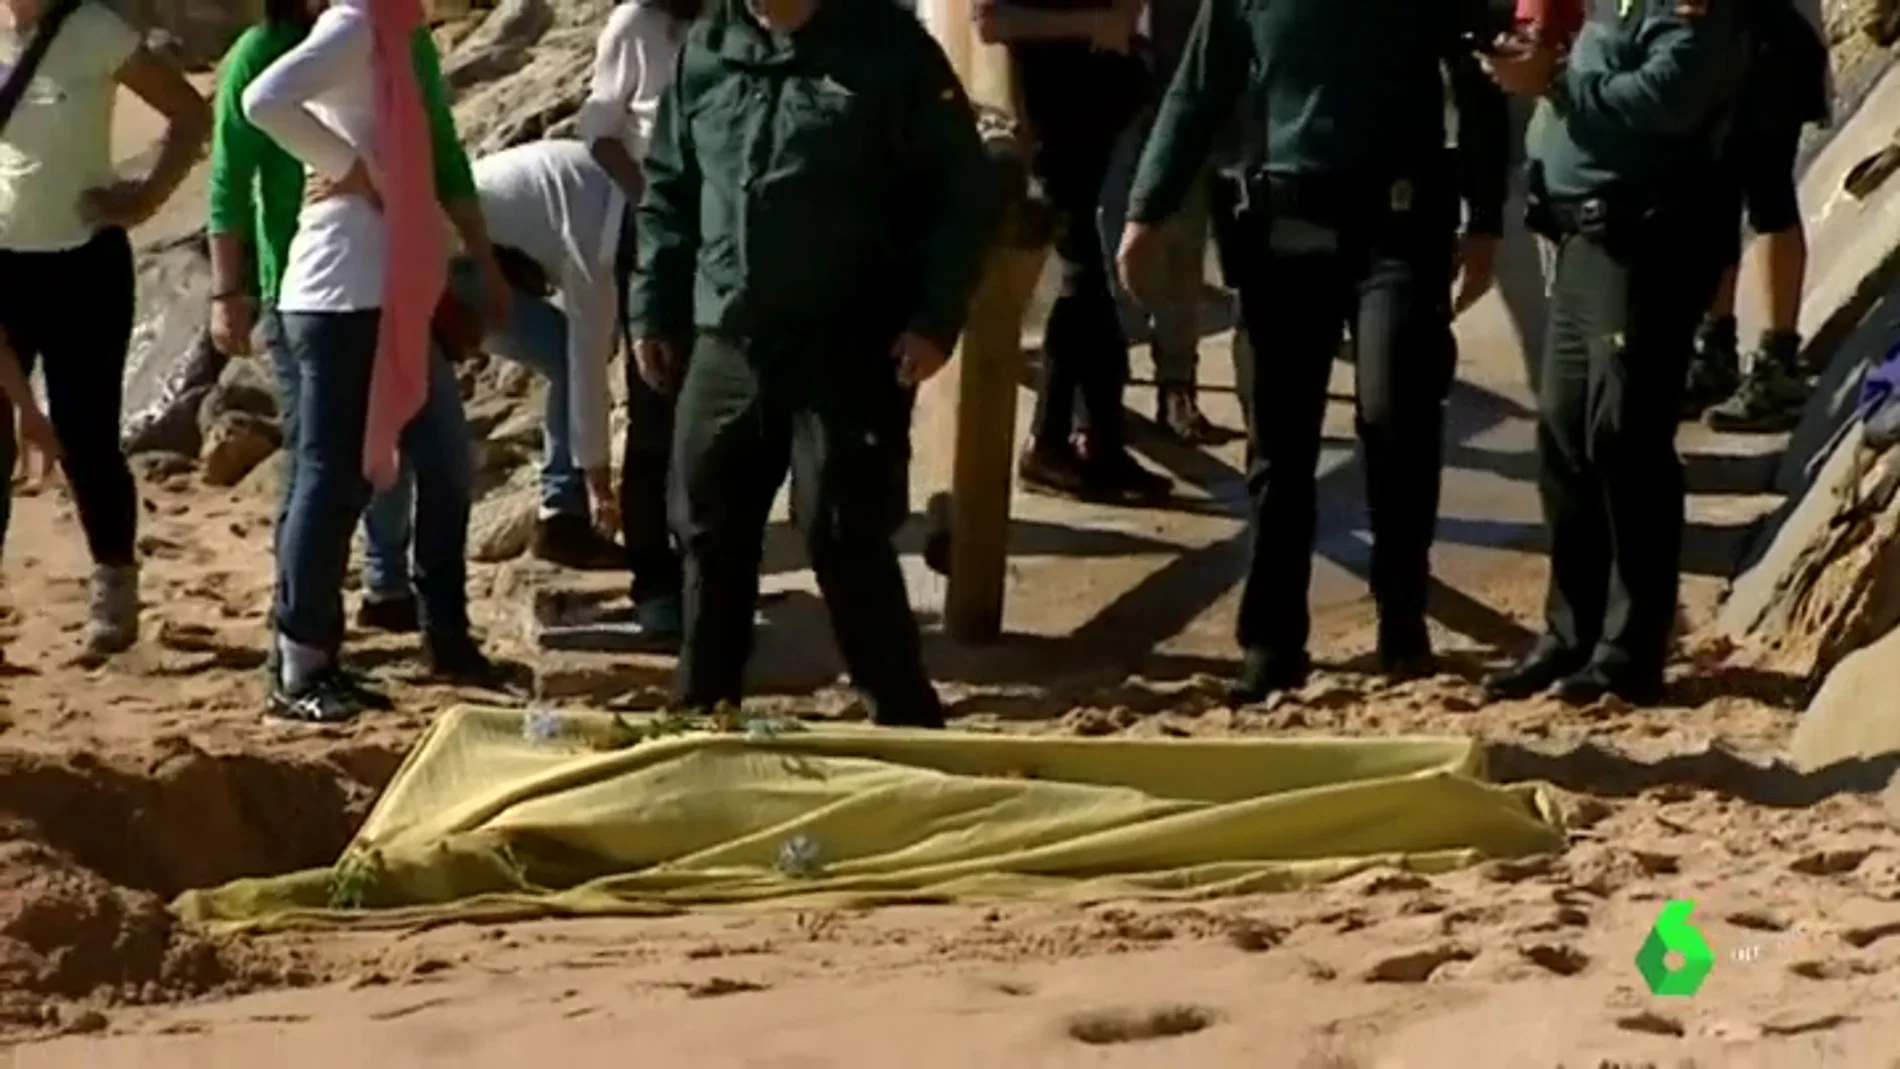 Encuentran el cadáver de otros de los migrantes desaparecidos en Barbate